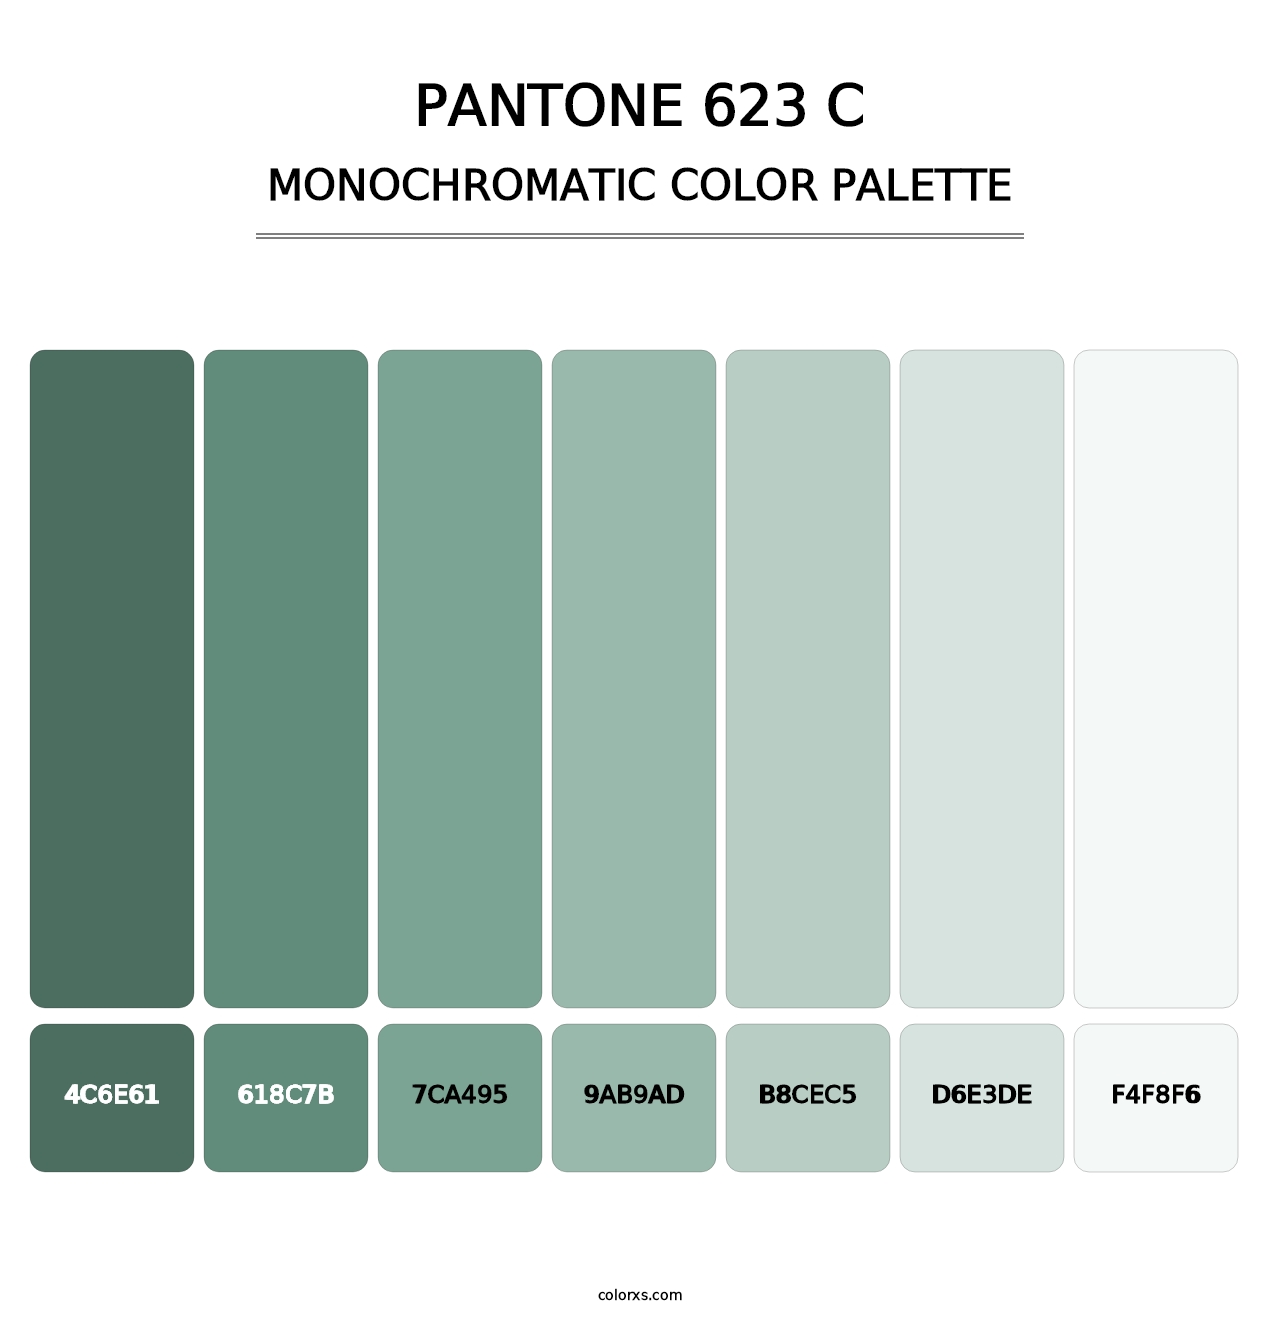 PANTONE 623 C - Monochromatic Color Palette